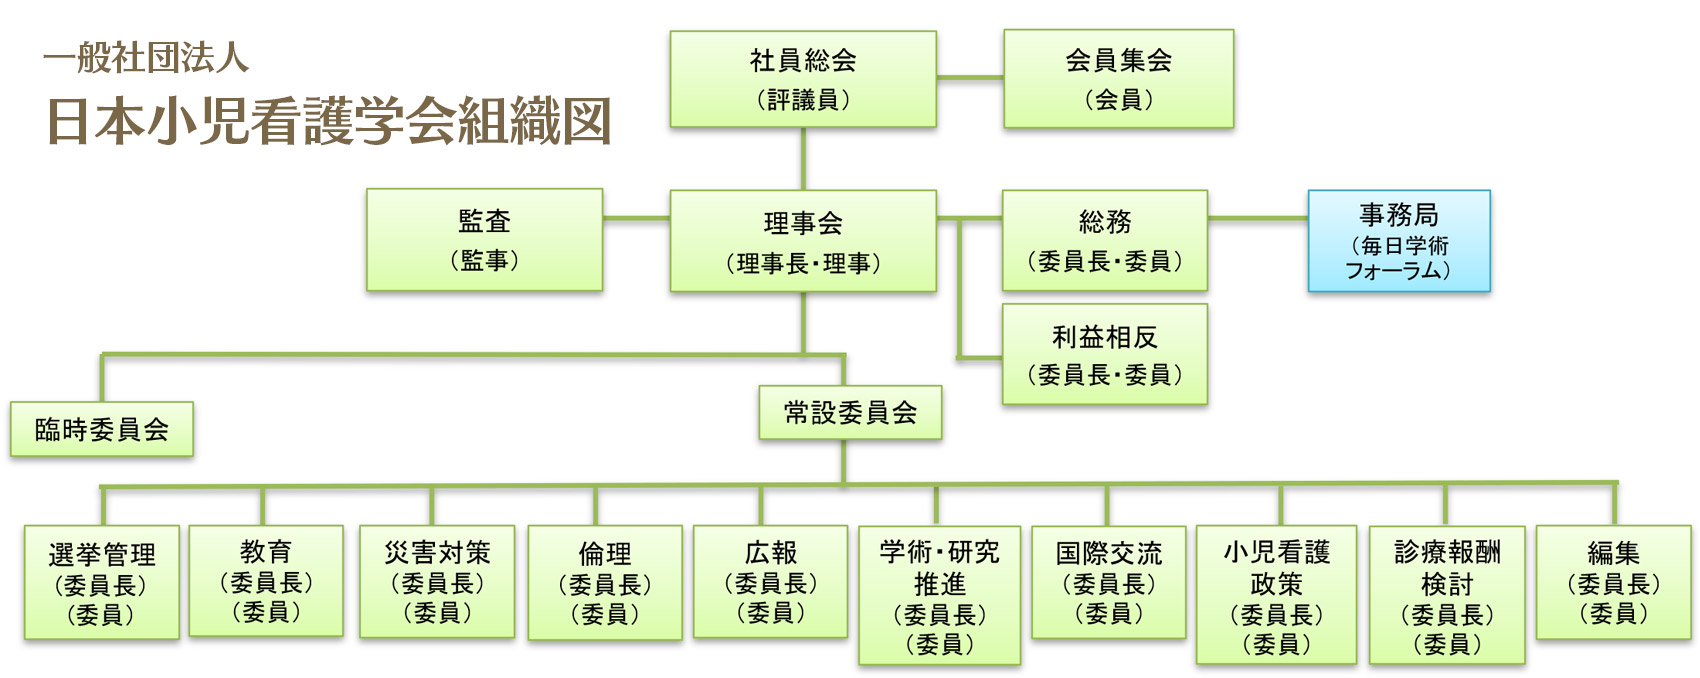 一般社団法人 日本小児看護学会組織図